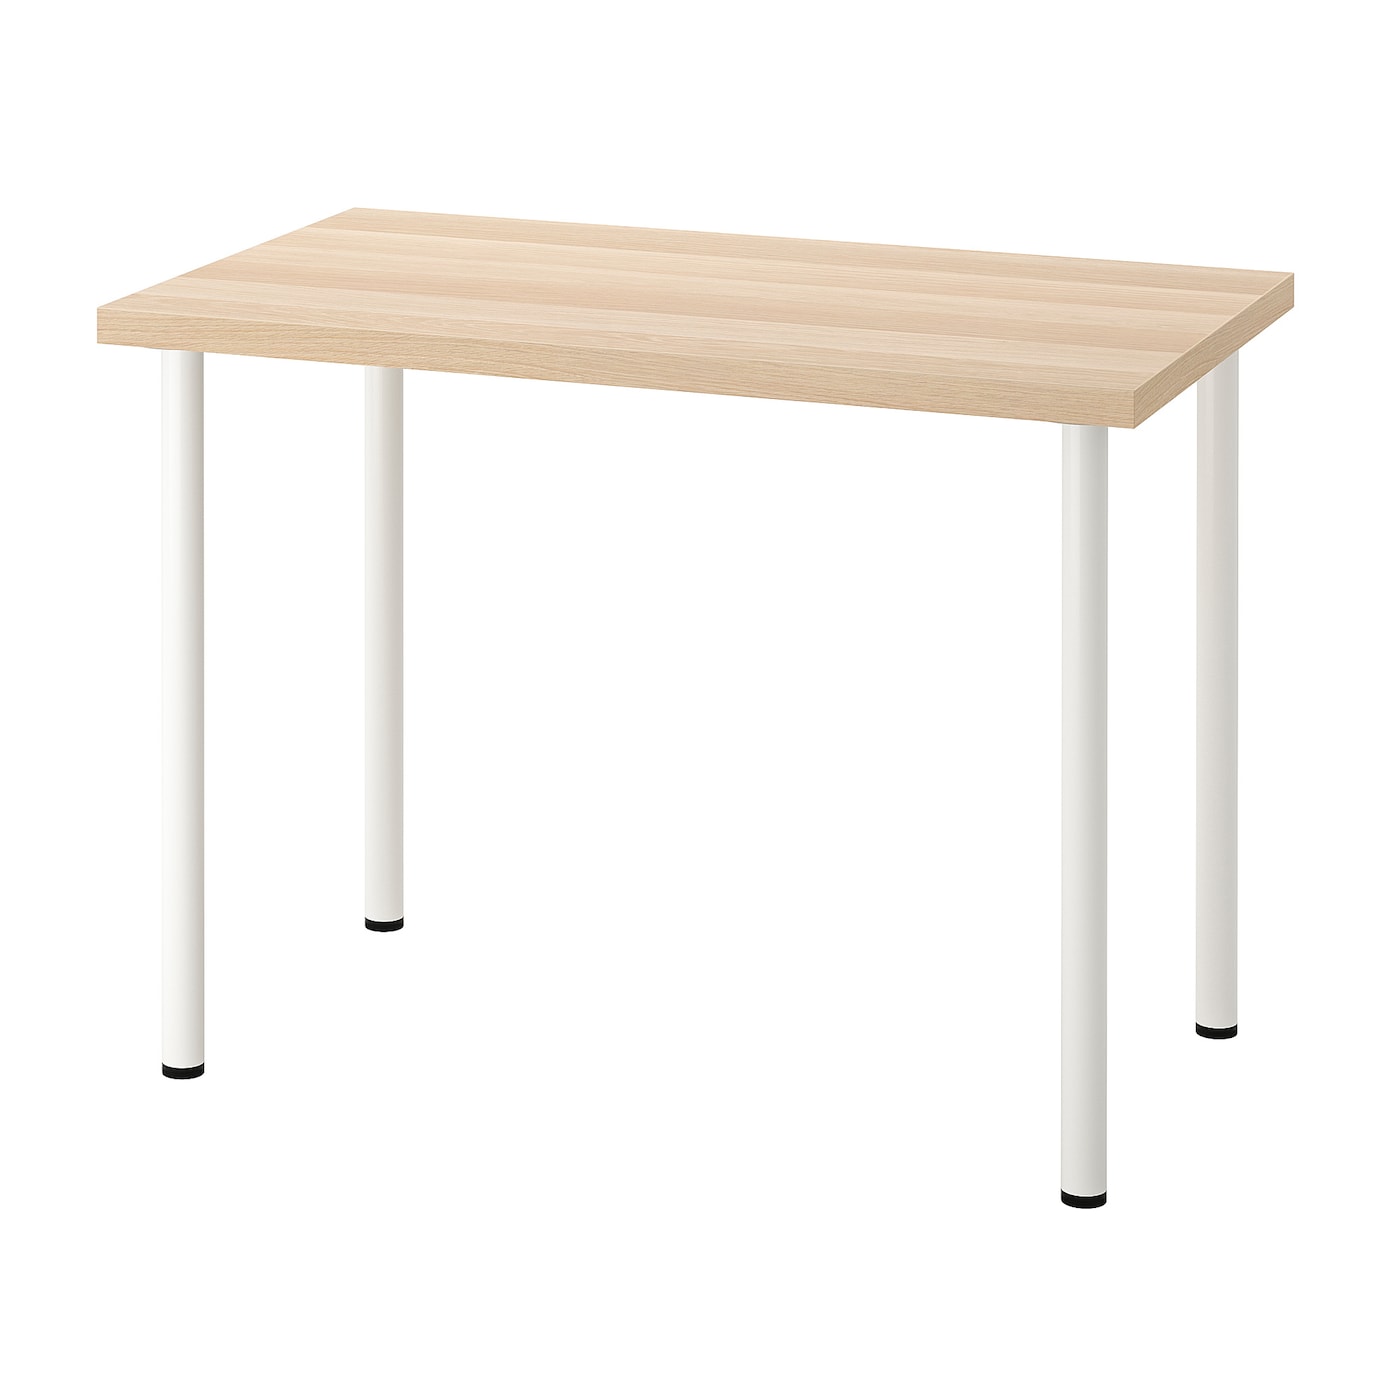 Письменный стол - IKEA LINNMON/ADILS, 100х60 см, под беленый дуб/белый, ЛИННМОН/АДИЛЬС ИКЕА